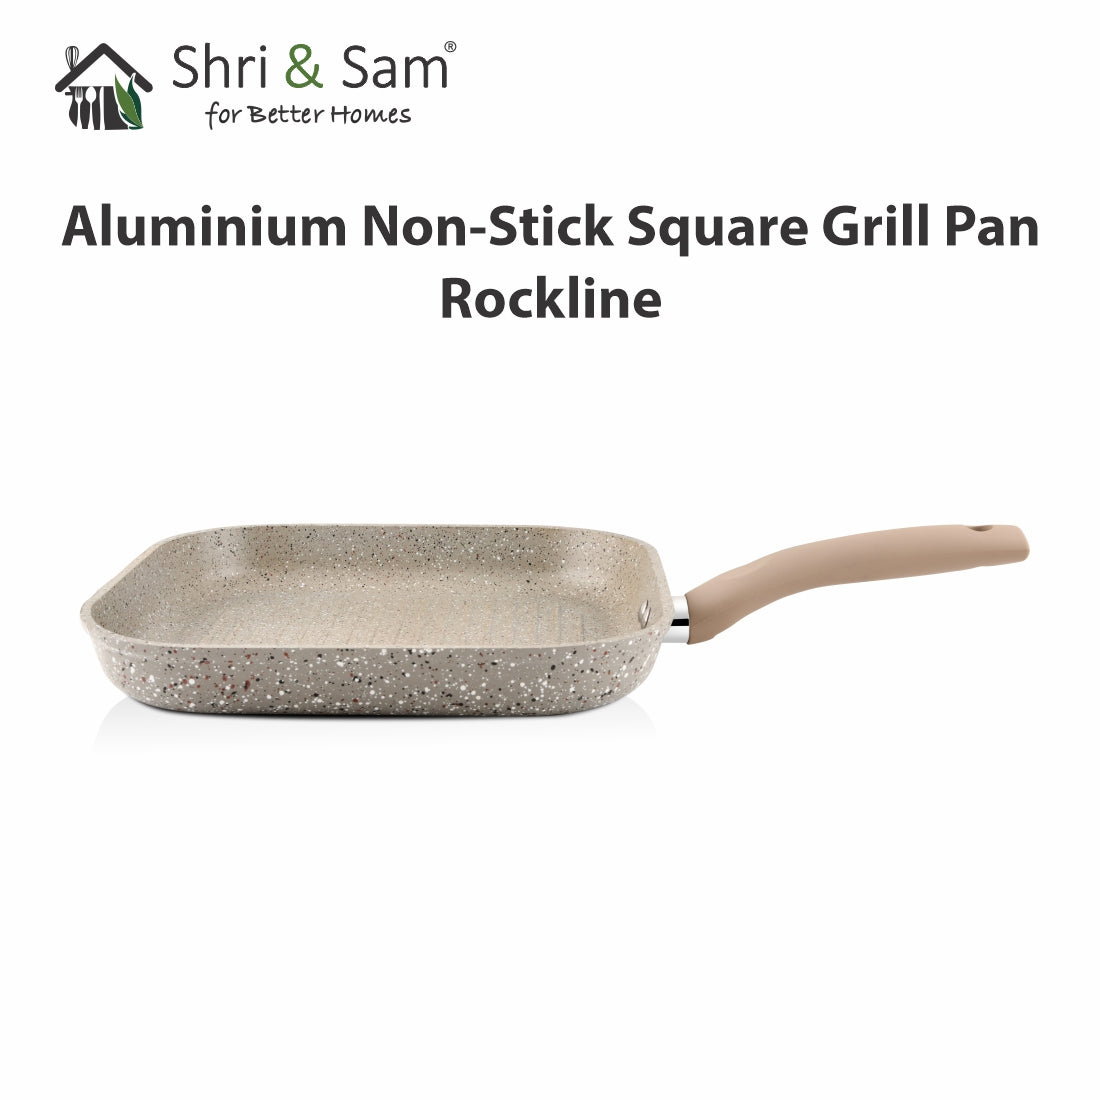 Aluminium Non-Stick Square Grill Pan Rockline